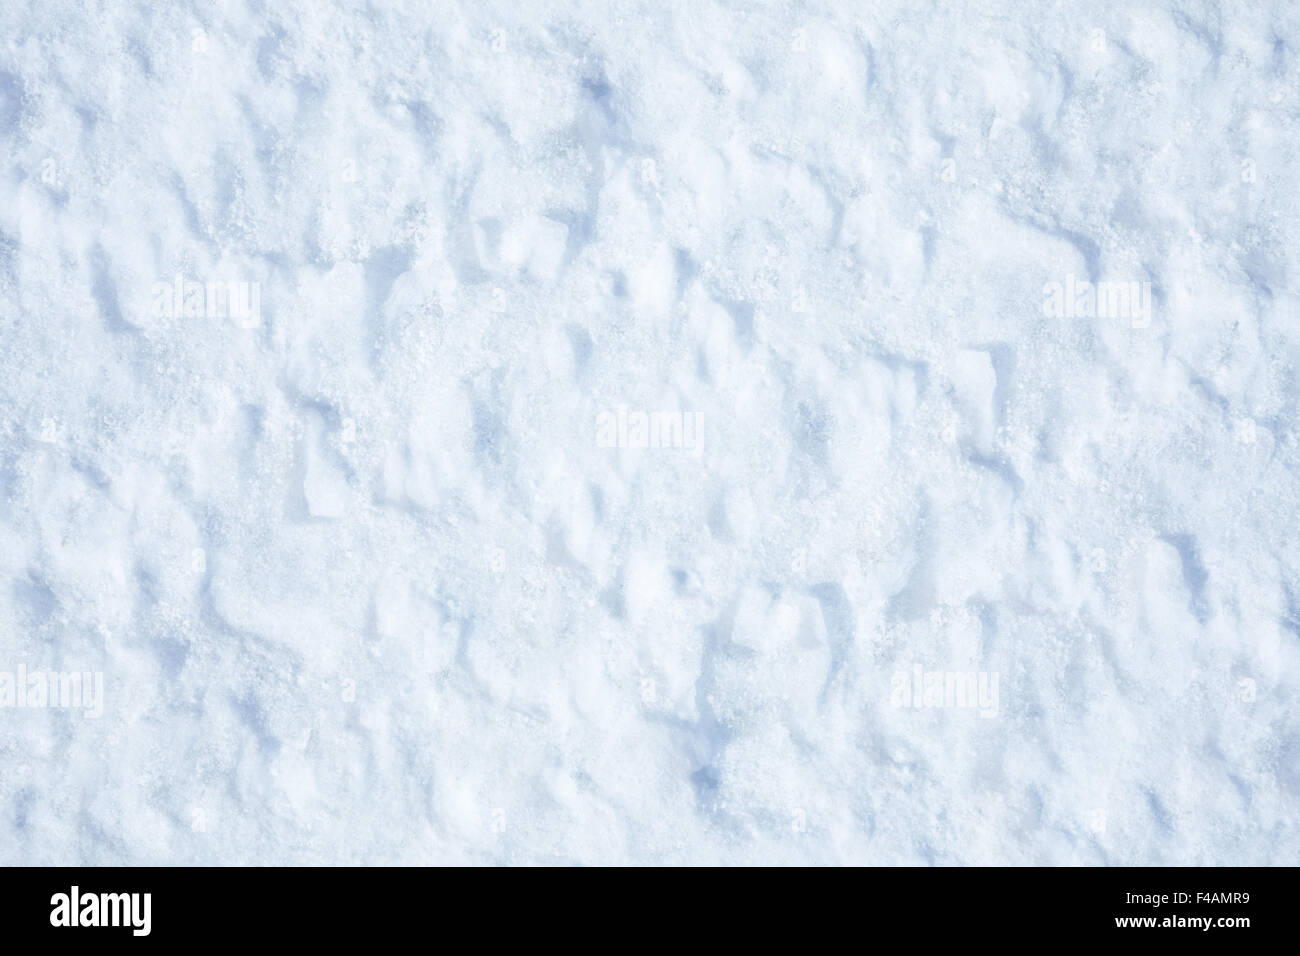 Snow texture Stock Photo